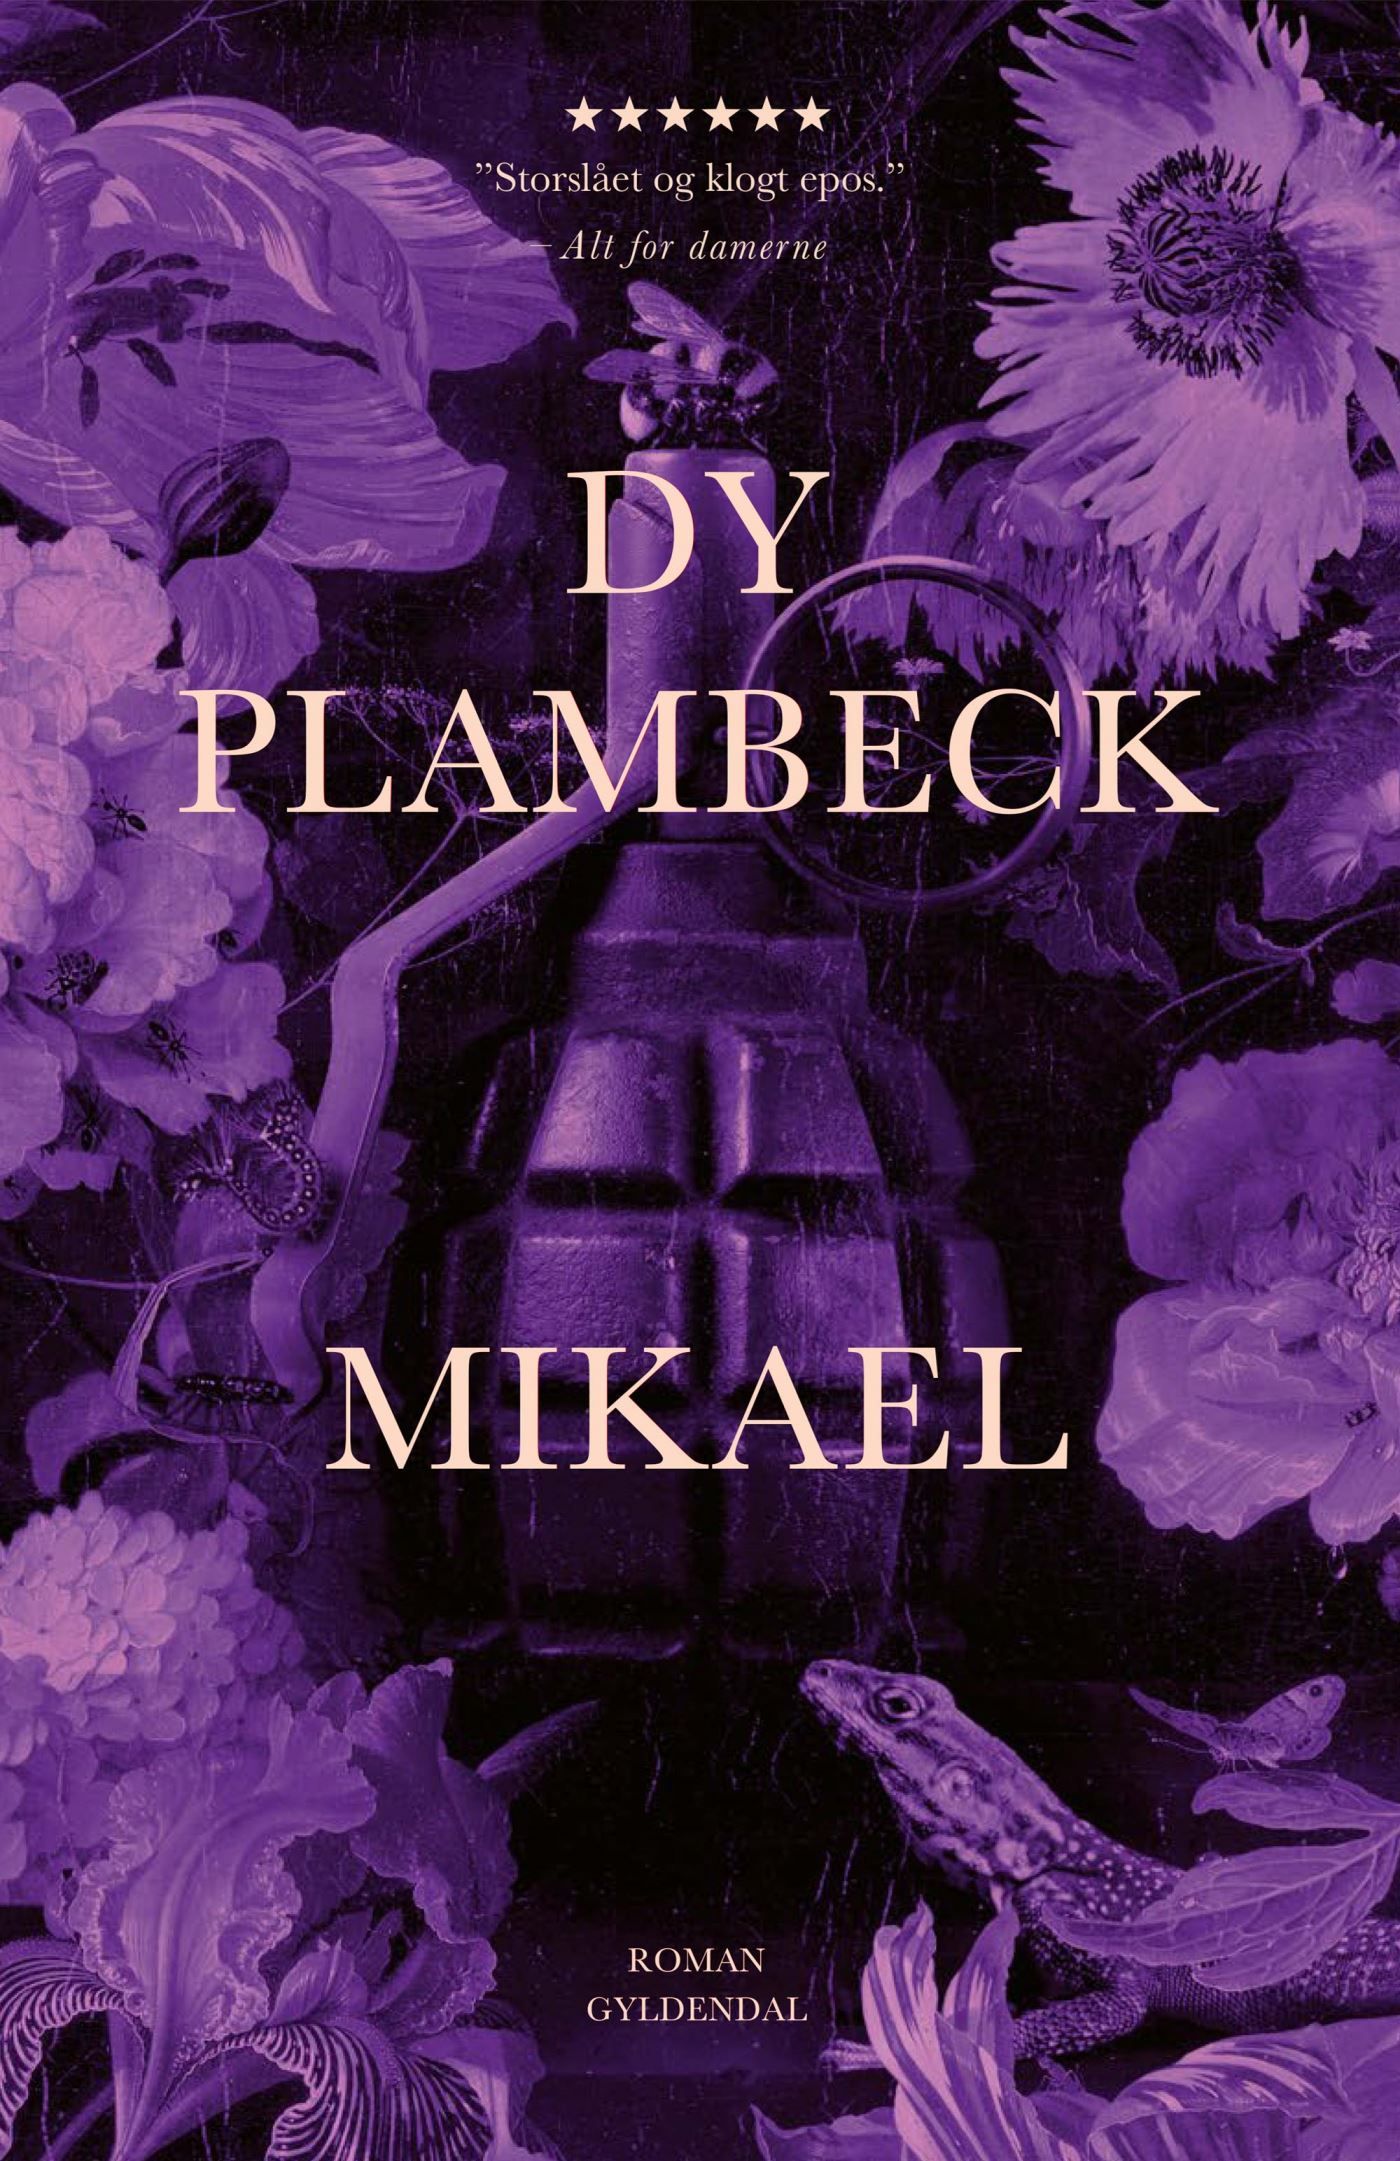 Mikael, lydbog af Dy Plambeck